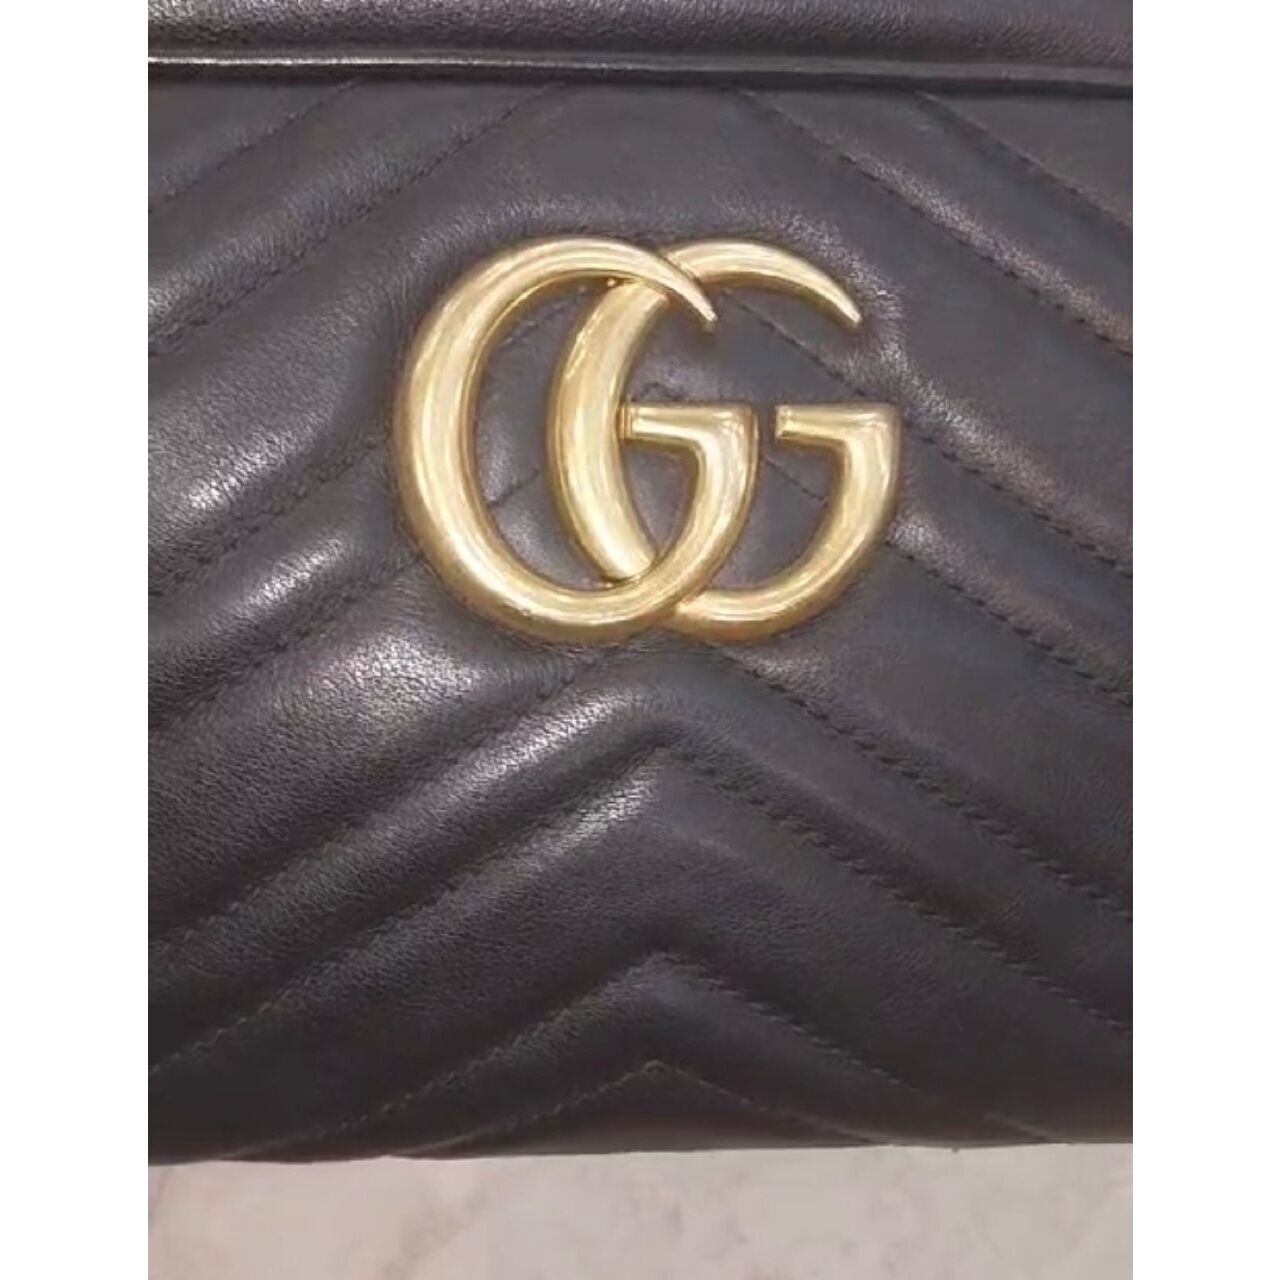 Gucci Black Handbag